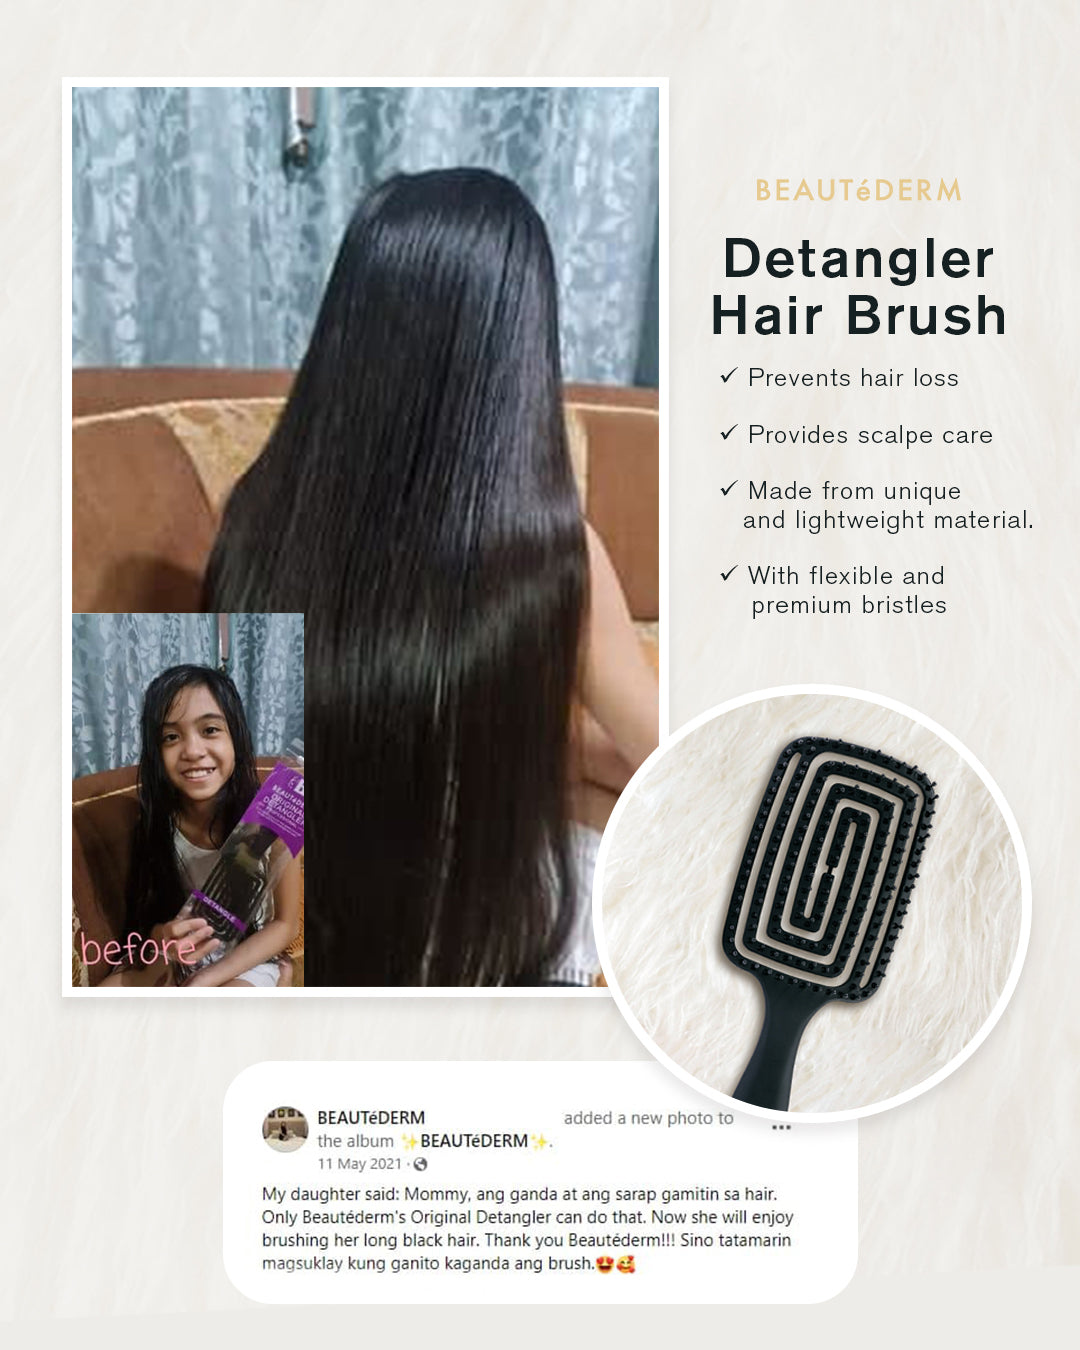 Beautederm Detangler Hair Brush Feedback Testimony